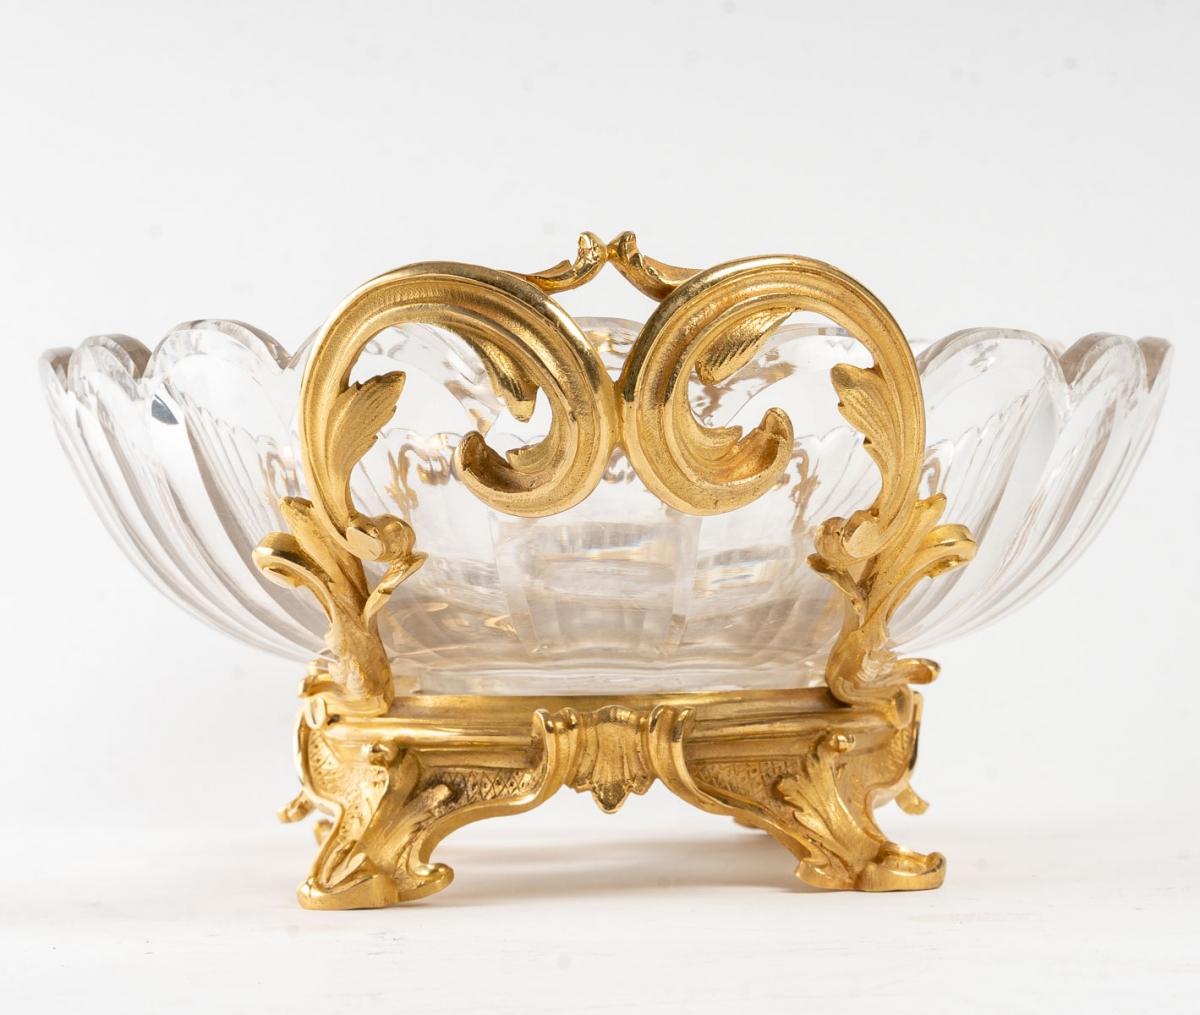 Baccarat crystal cup ?entre de table, gilded bronze mount
19th century
Measures: W: 47cm, D: 29cm, H: 15cm.